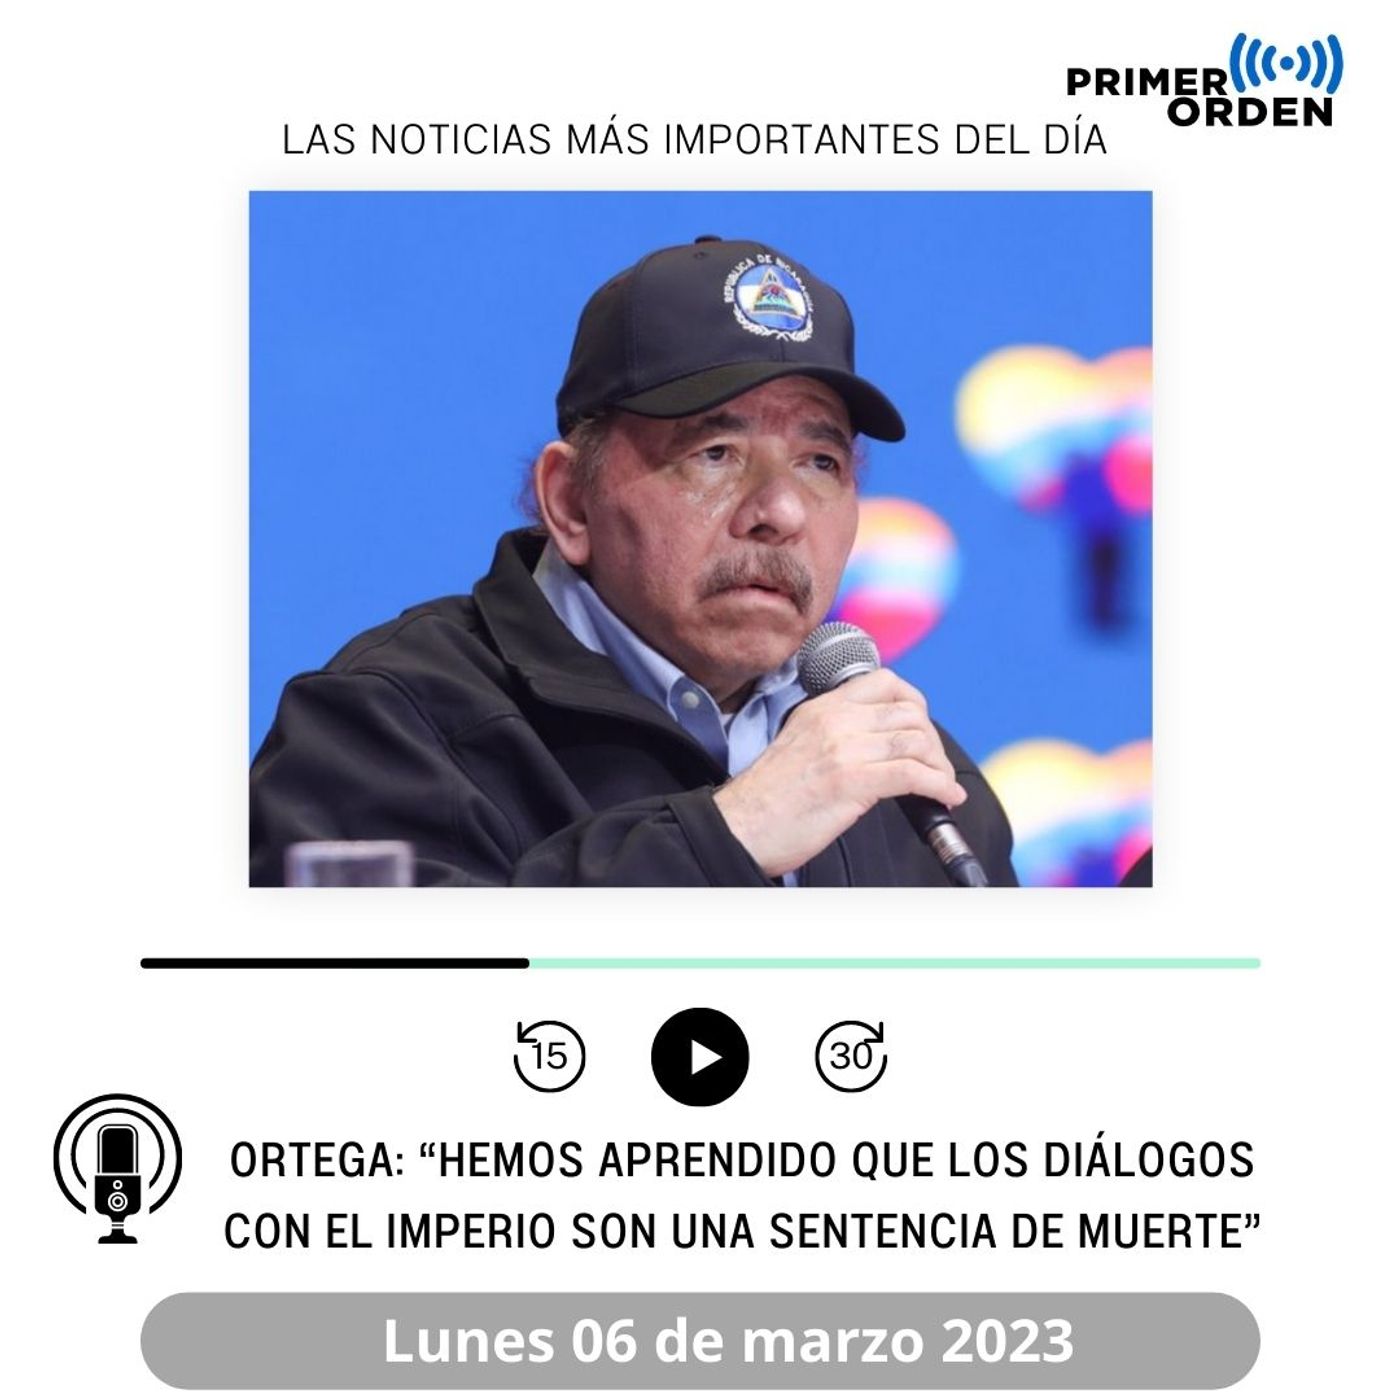 Ortega: “Hemos aprendido que los diálogos con el imperio son una sentencia de muerte”